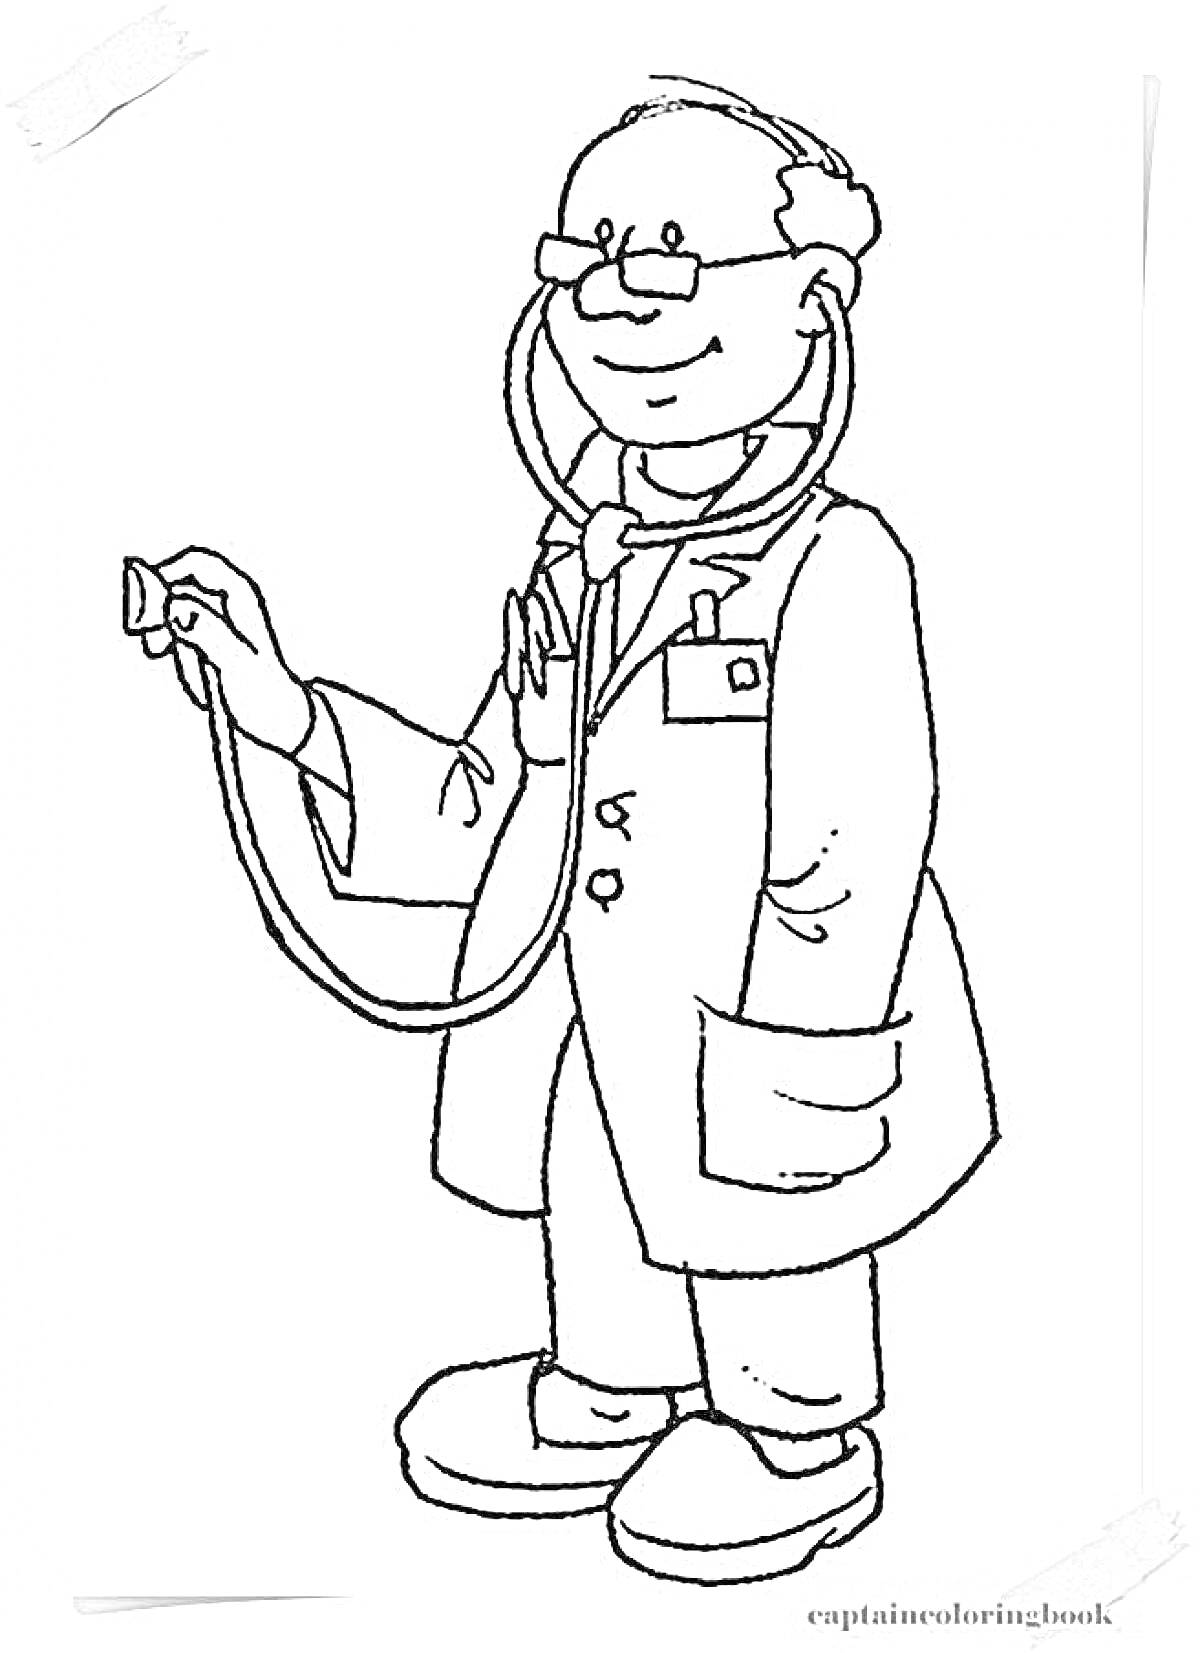 Раскраска Врач с фонендоскопом, одет в халат и очки